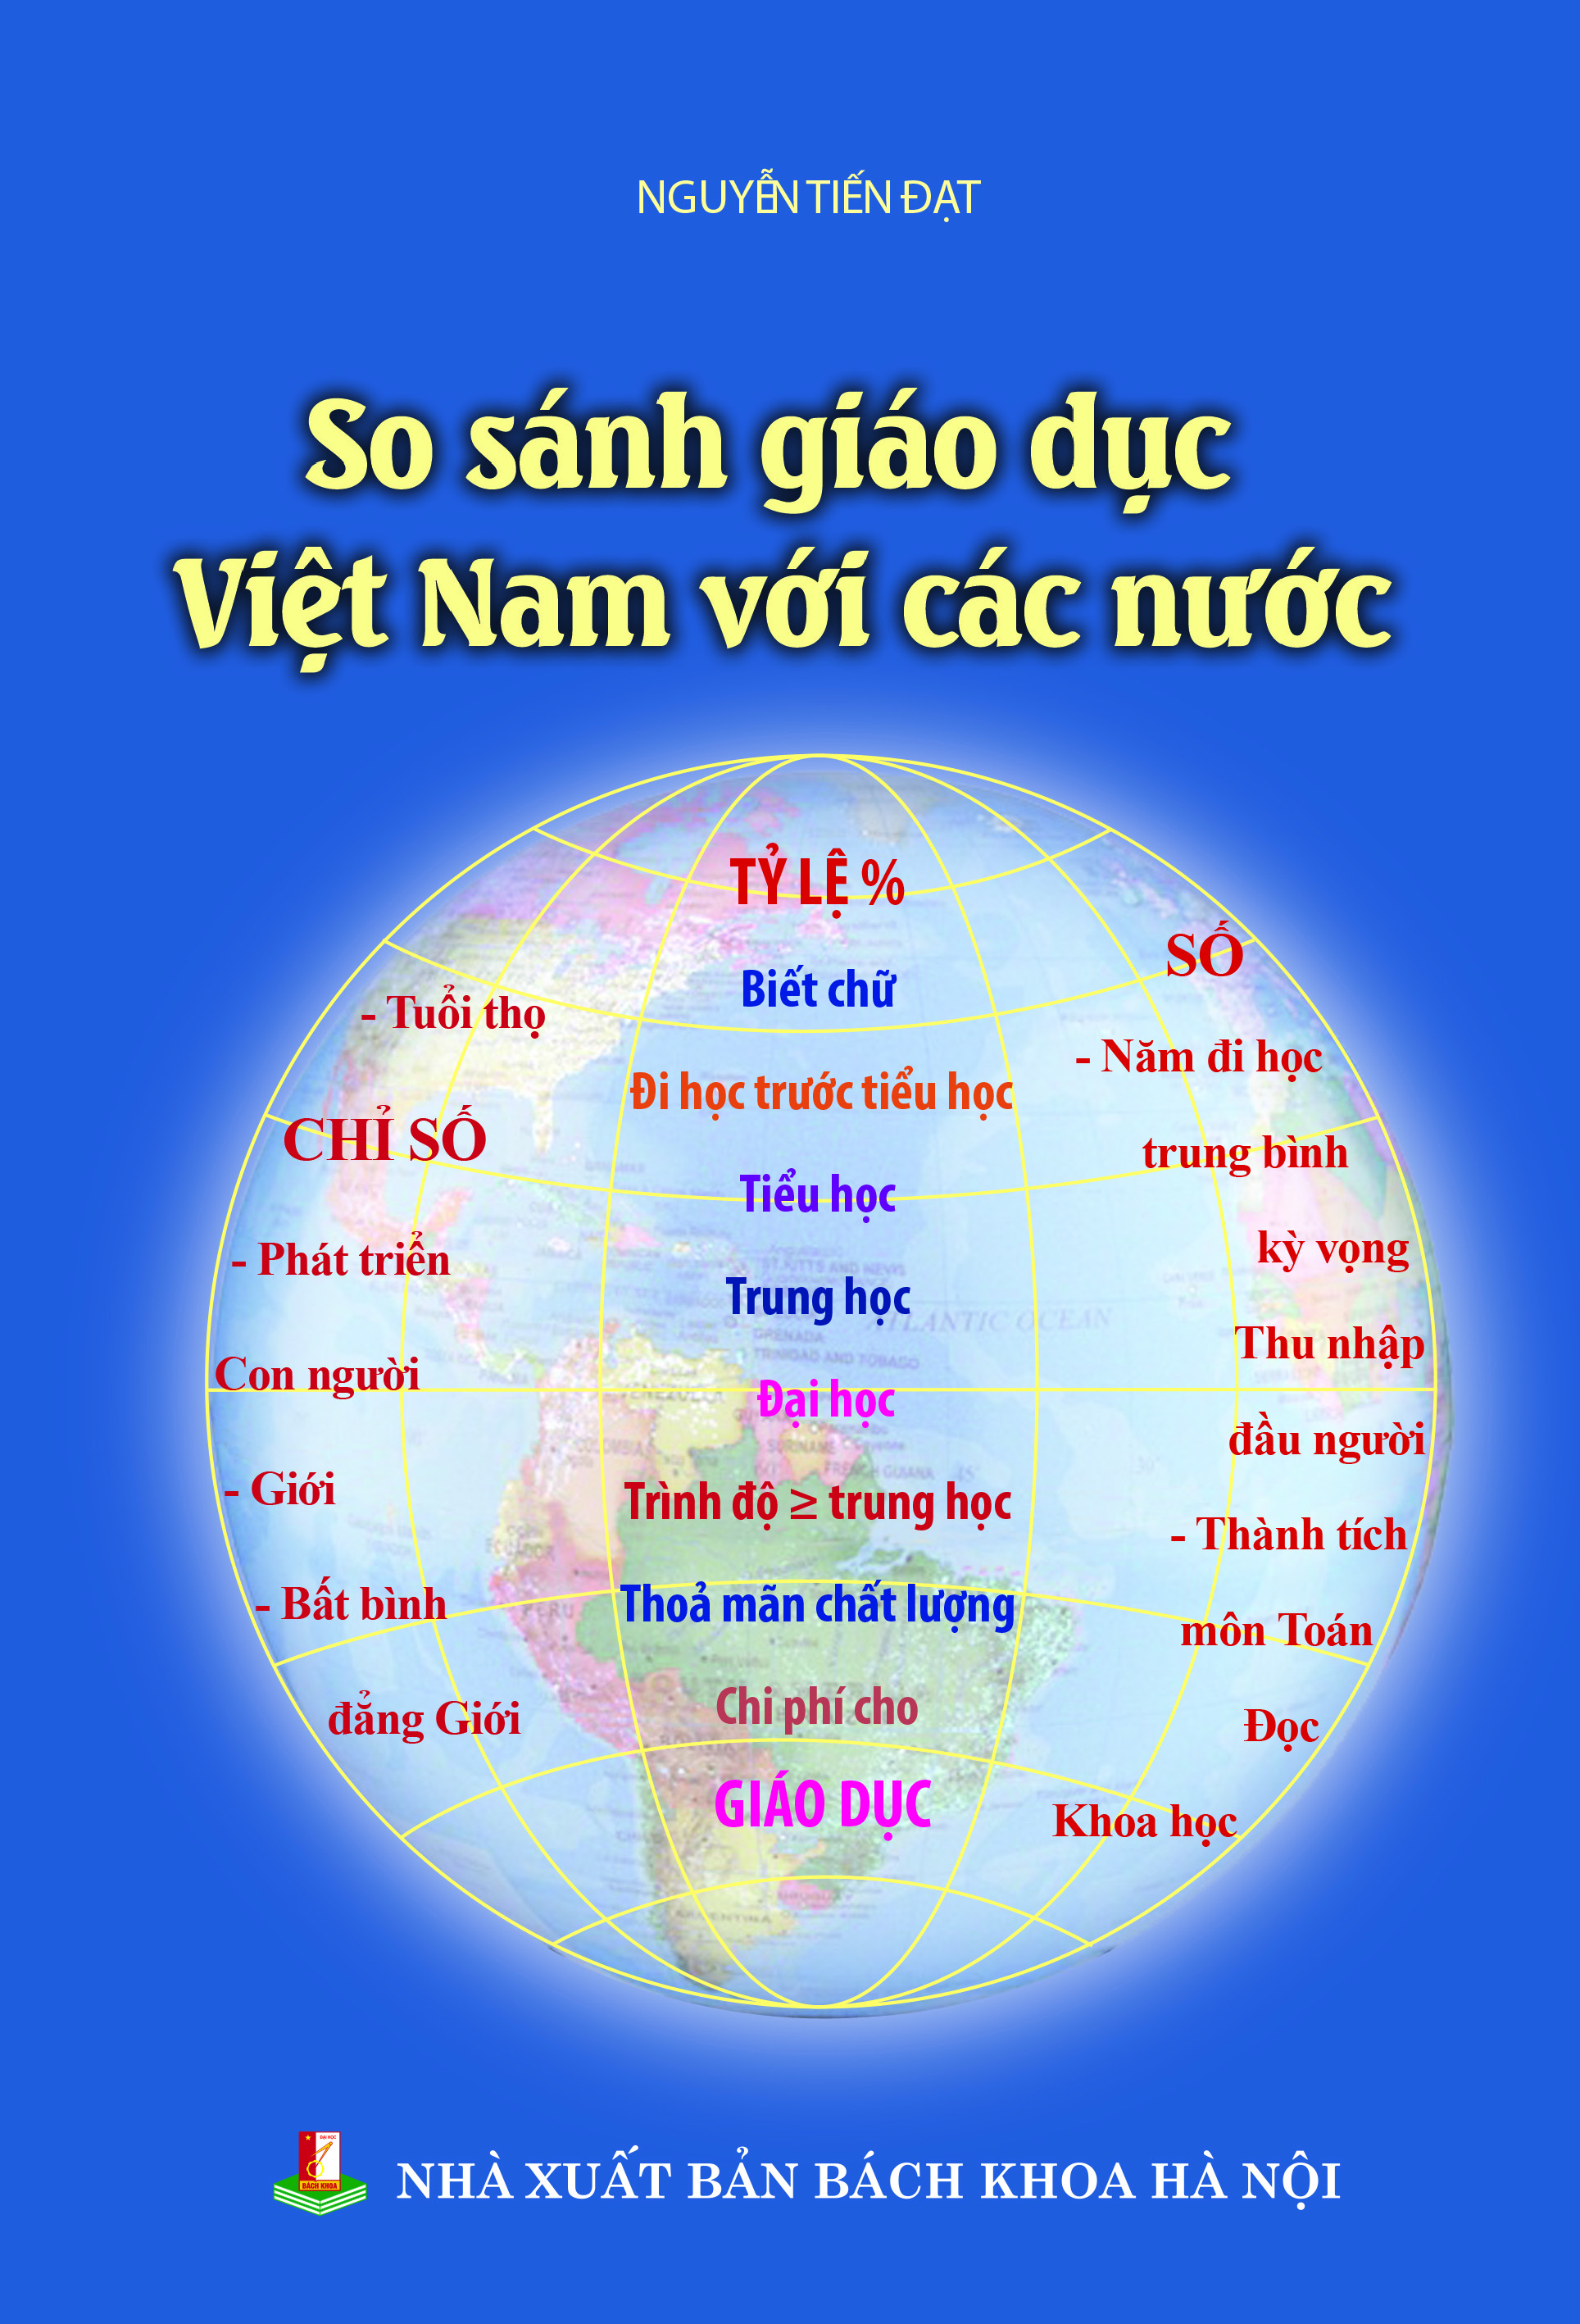 So sánh giáo dục Việt Nam với các nước